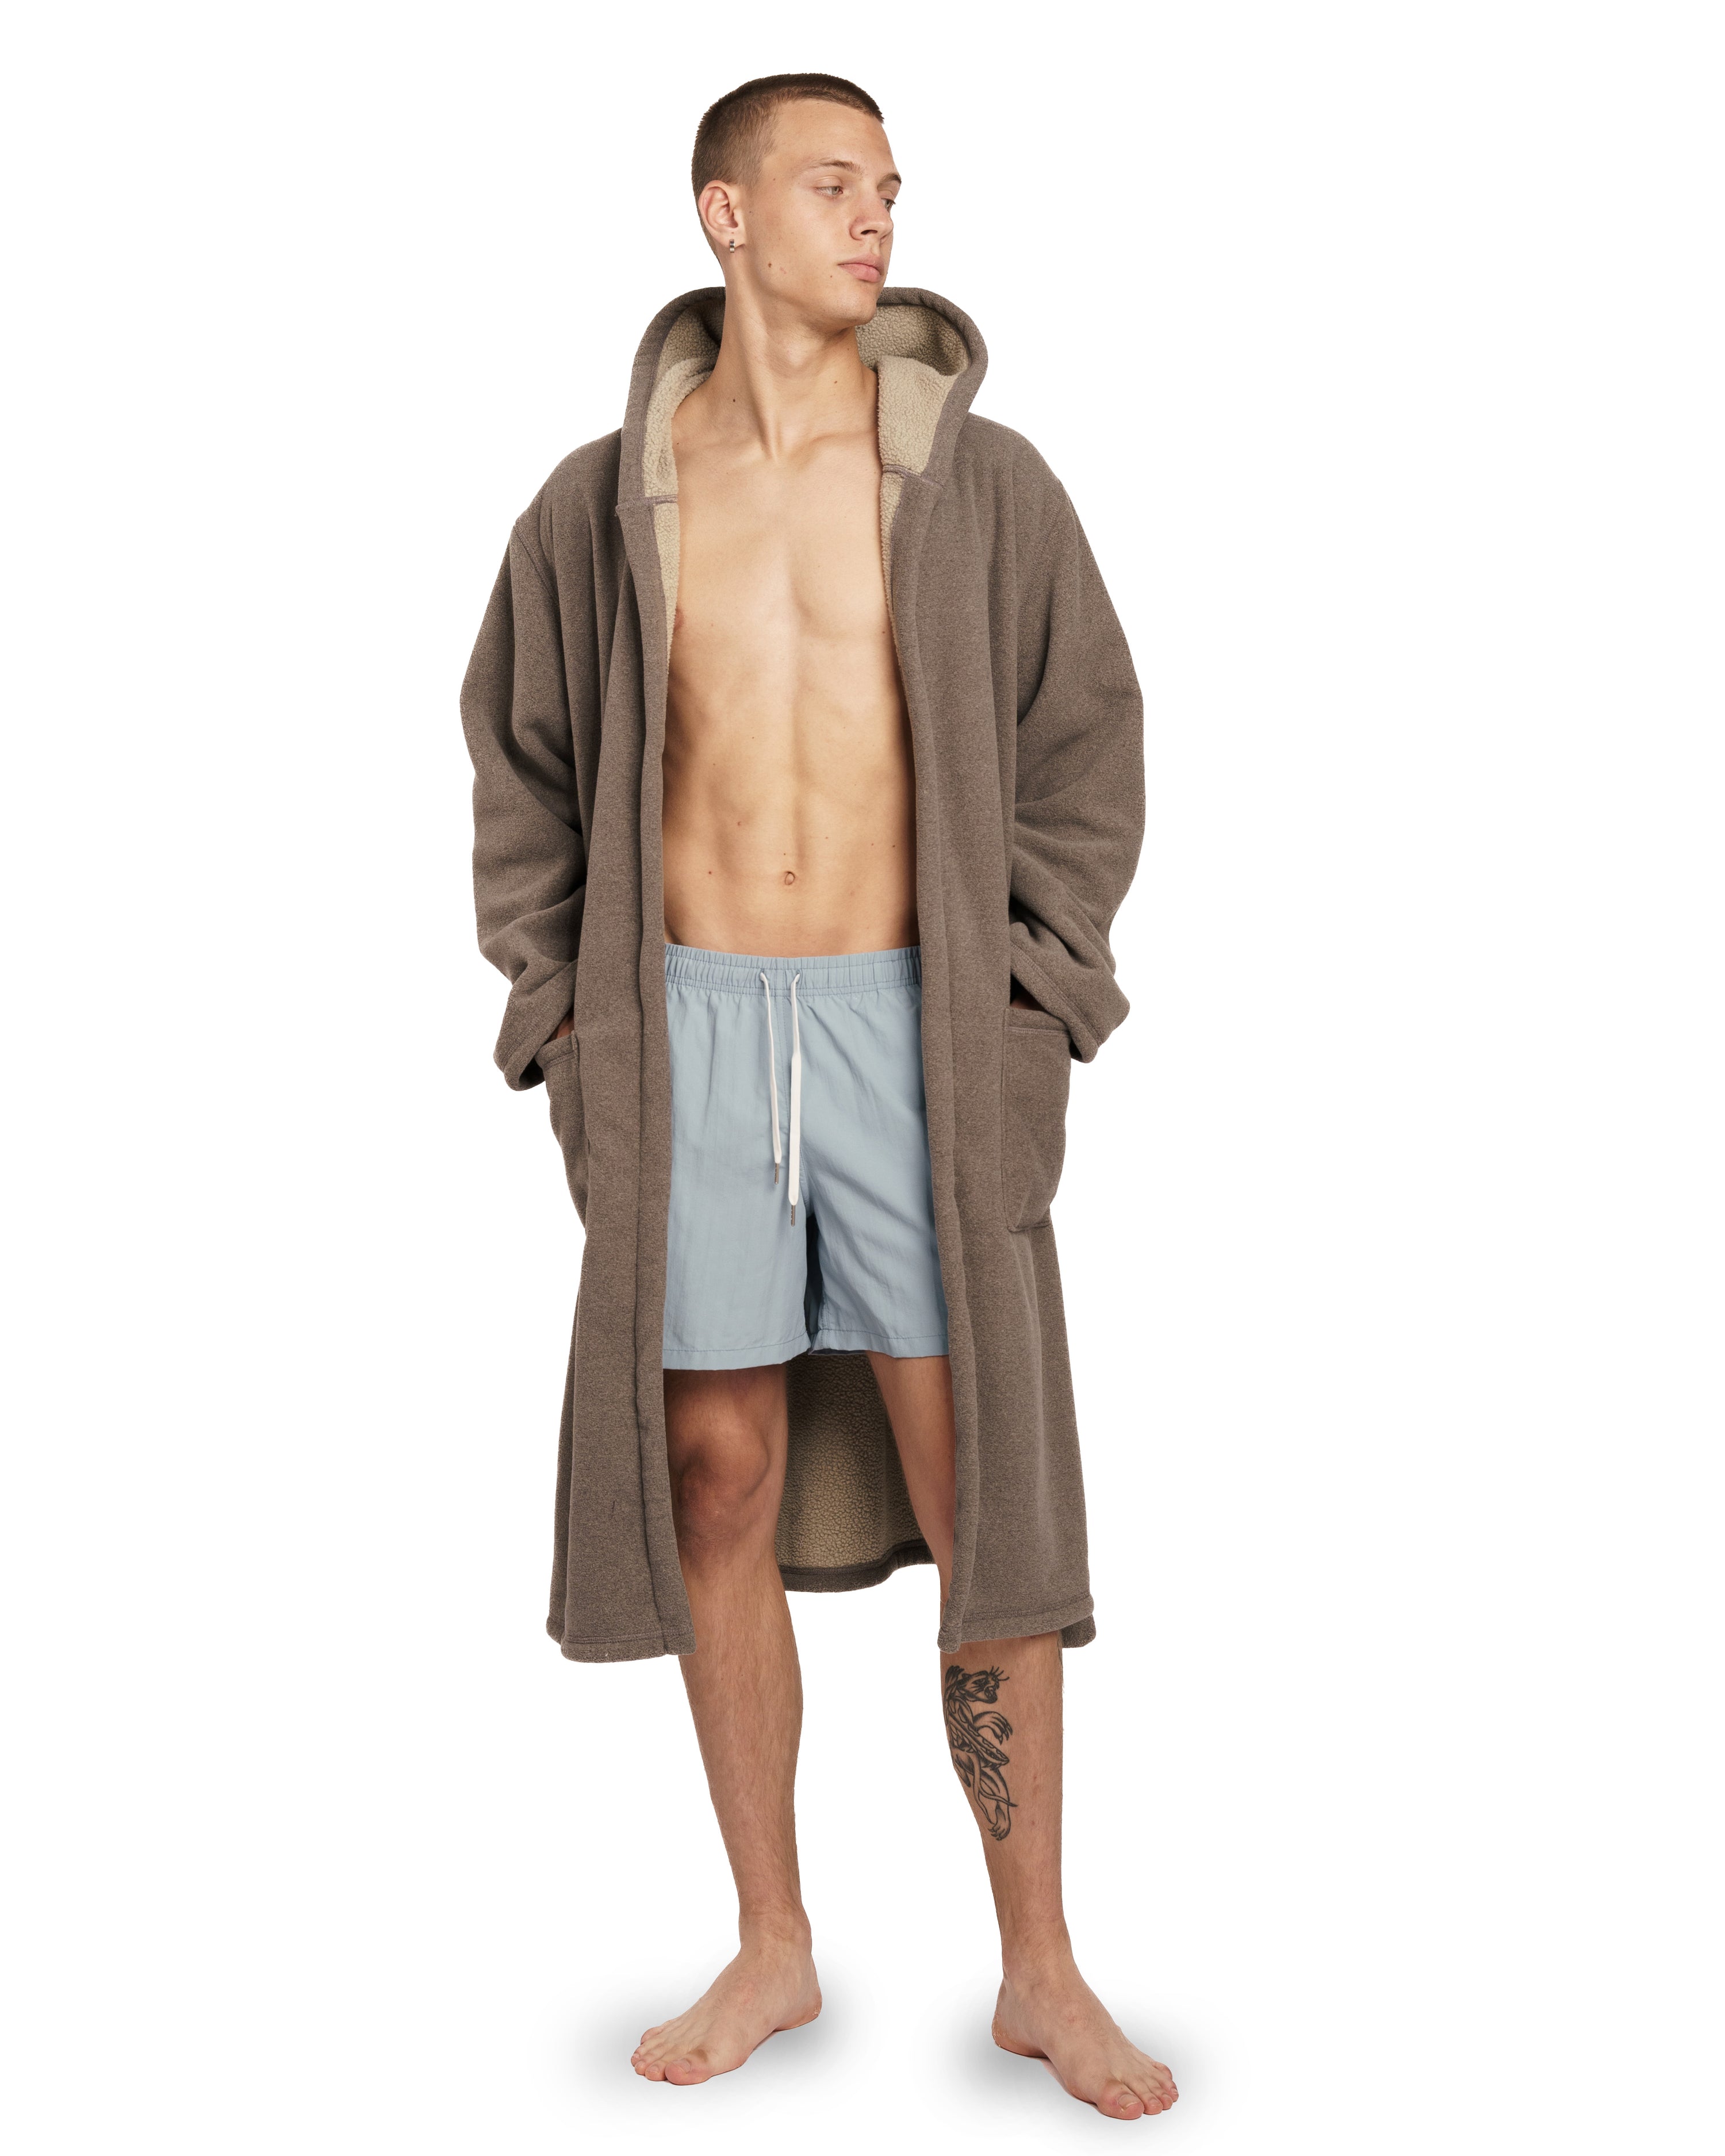 model wearing ivory Bather fleece robe with hood and belt